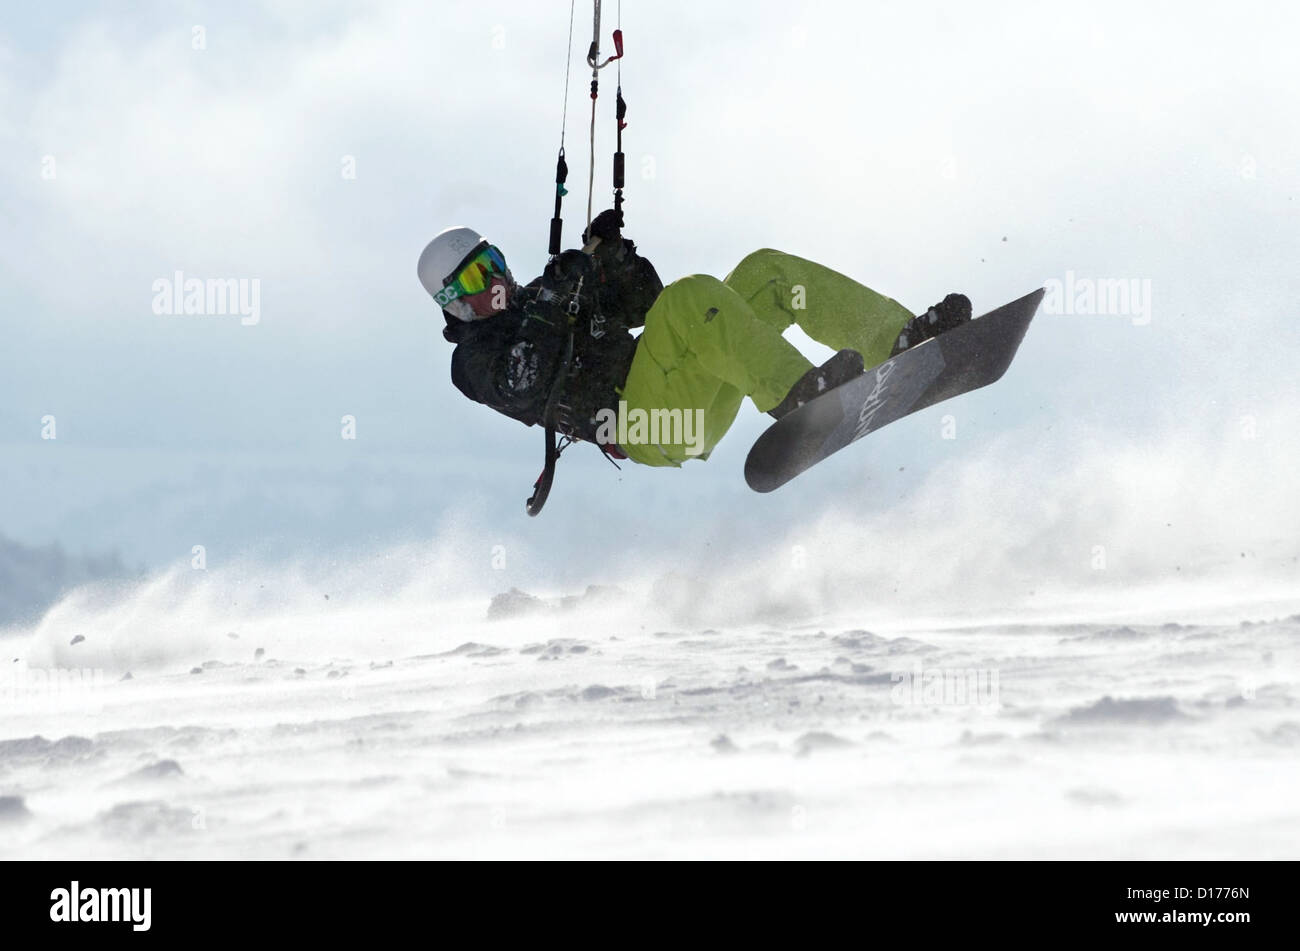 Eine Zugkraft surft durch den Schnee auf der Wasserkuppe, Deutschland, 7. Dezember 2012. Die Wintersport-Saison ist eröffnet. Foto: Uwe Zucchi Stockfoto